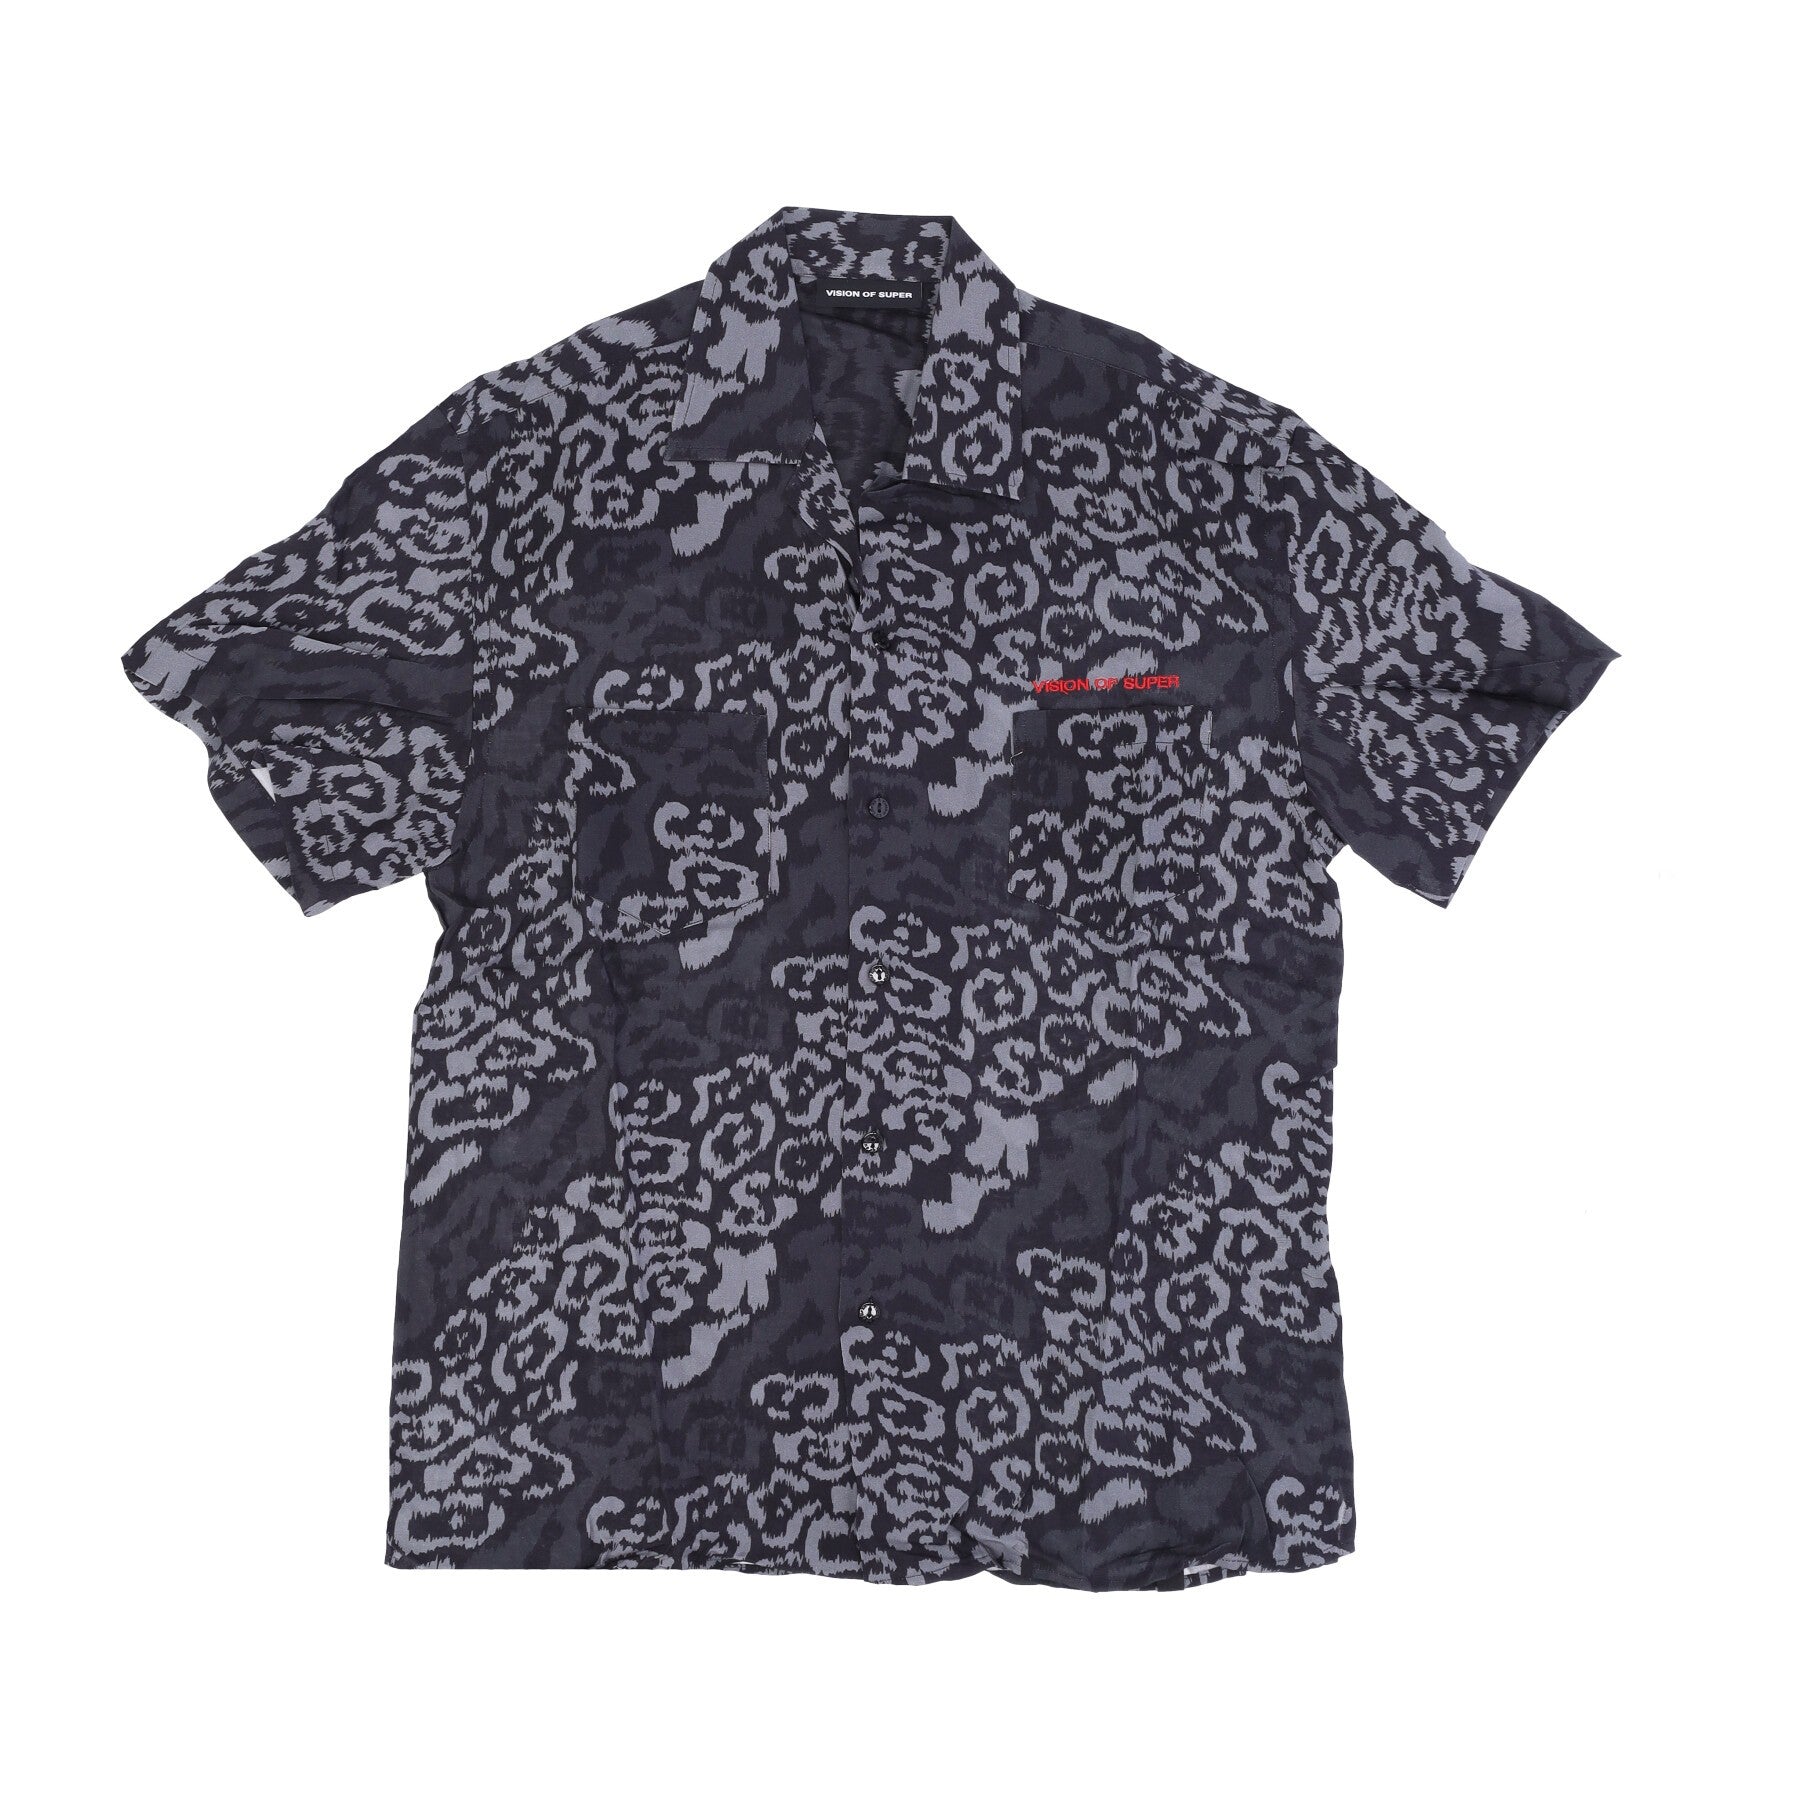 Vision Of Super, Camicia Manica Corta Uomo Allover Leopard Shirt, Black